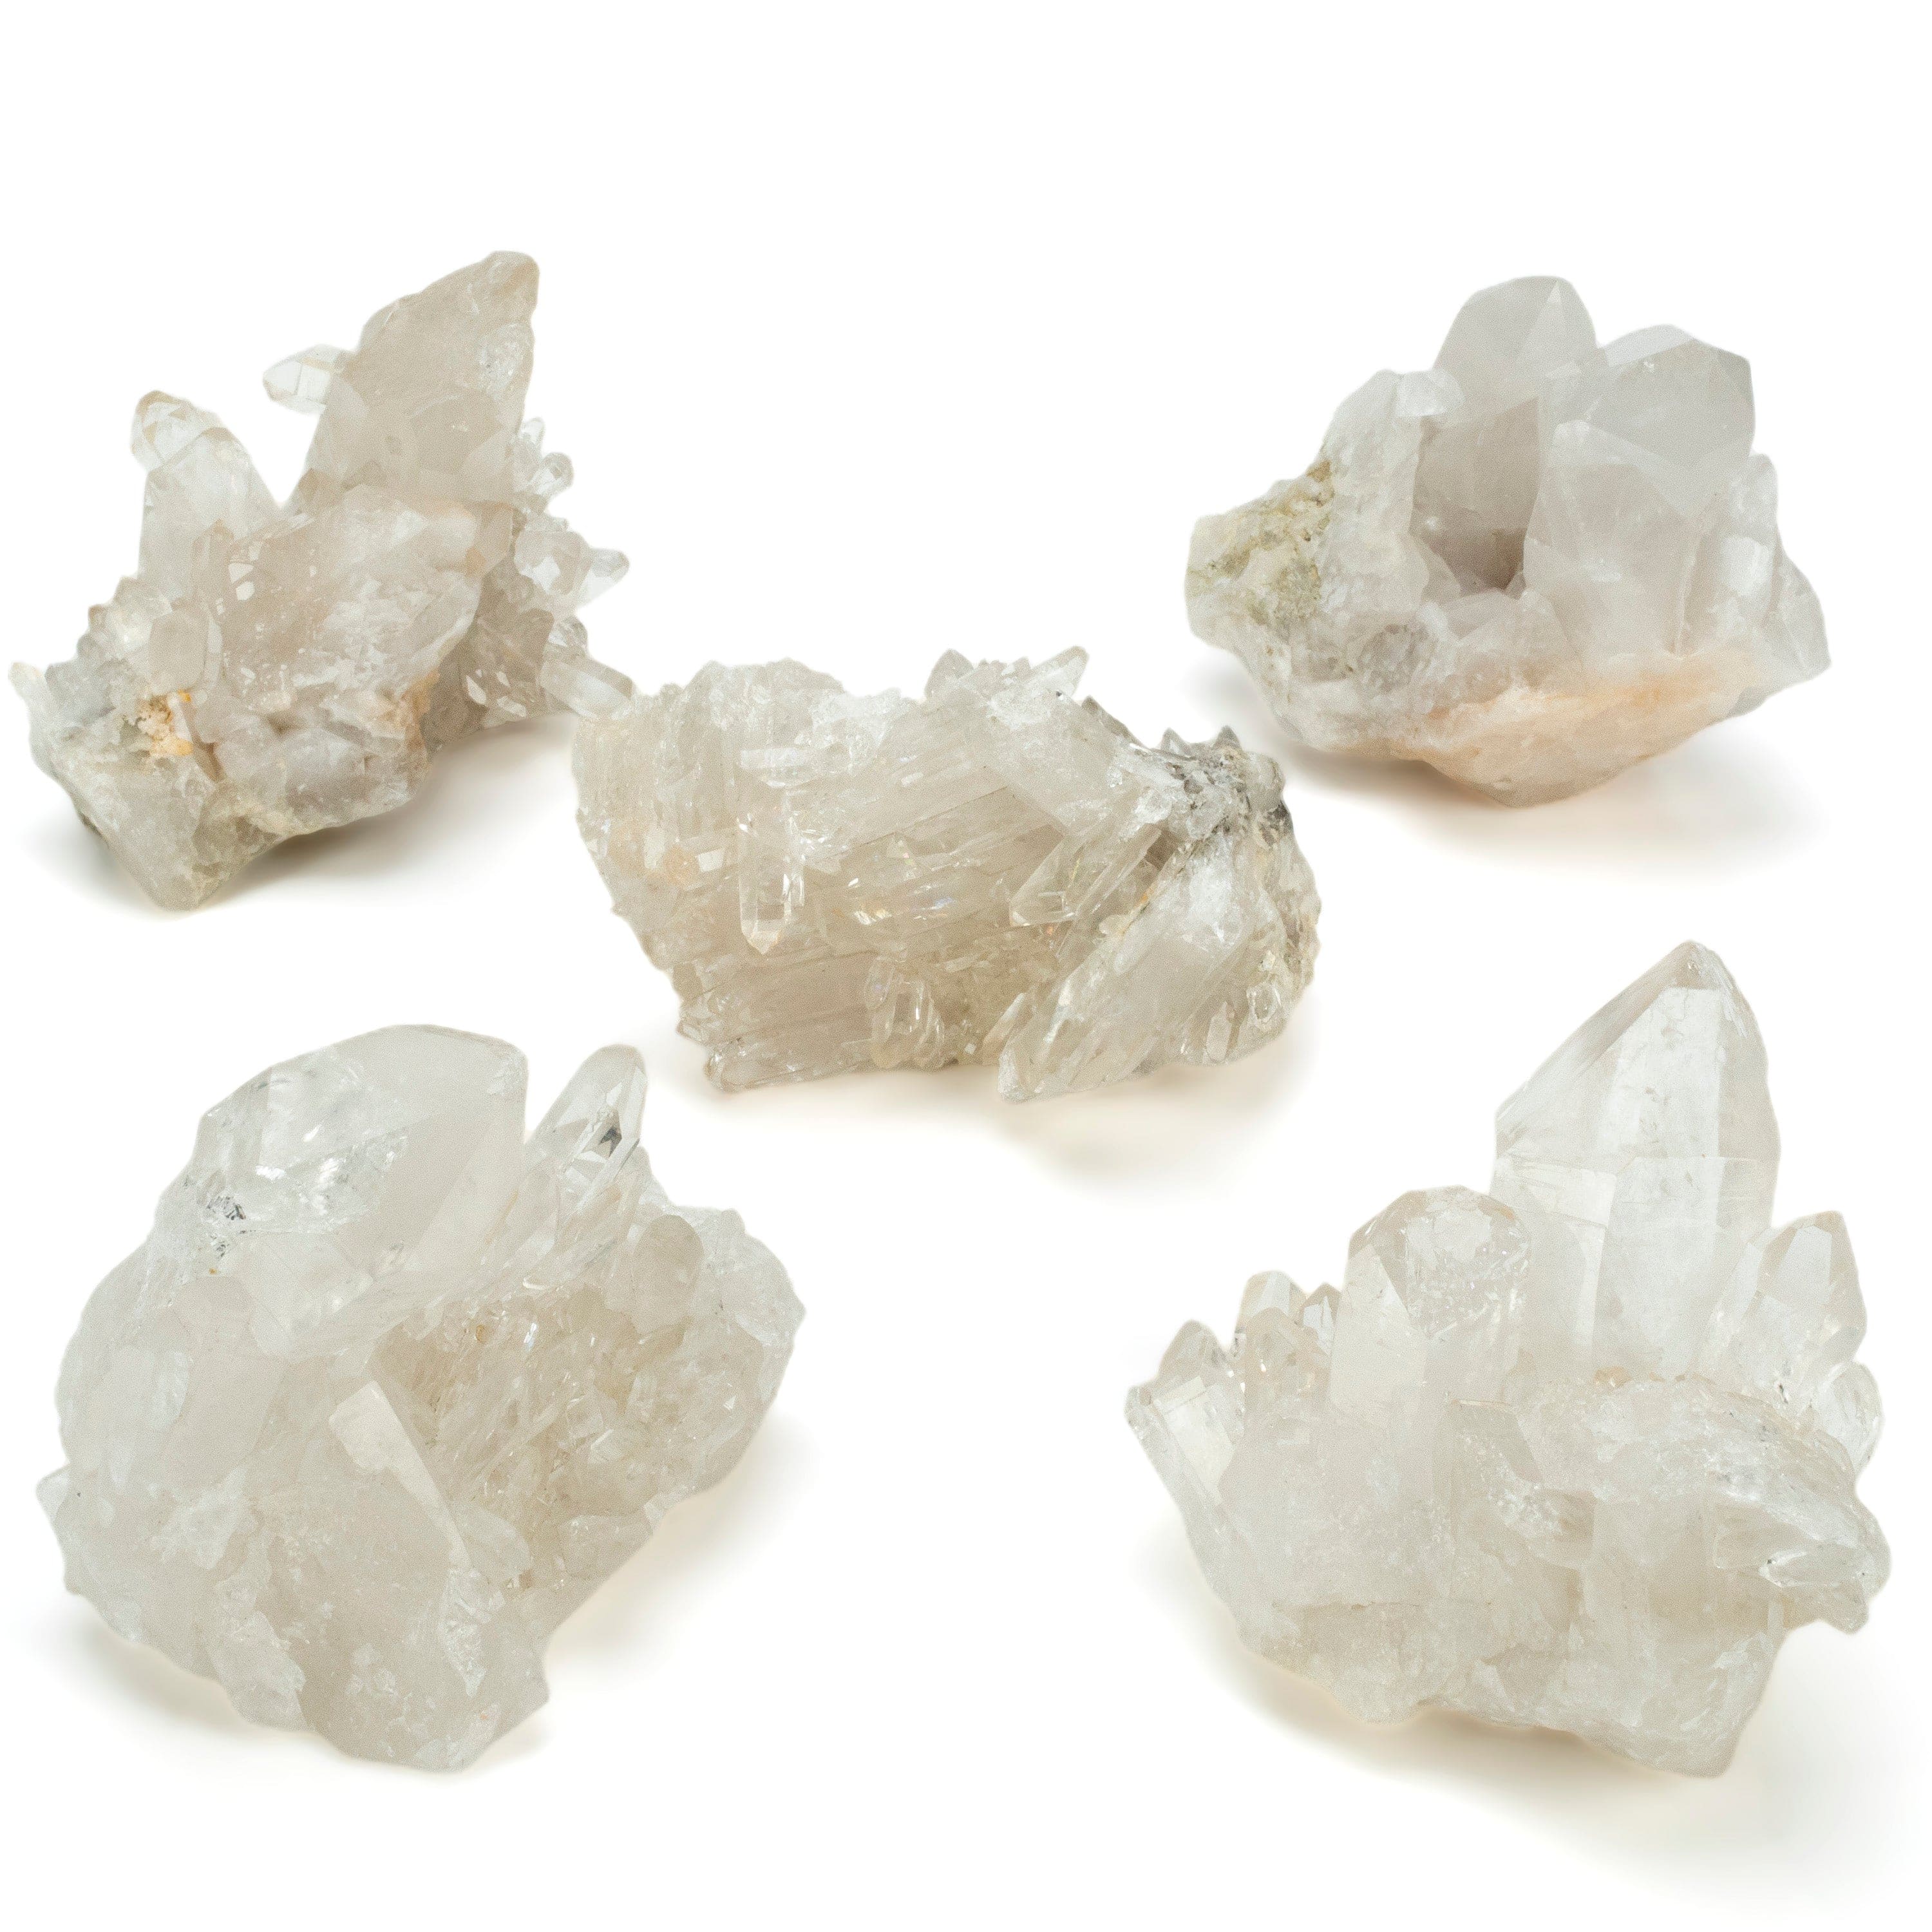 Kalifano Quartz Natural Crystal Quartz Cluster - 625 grams QC600